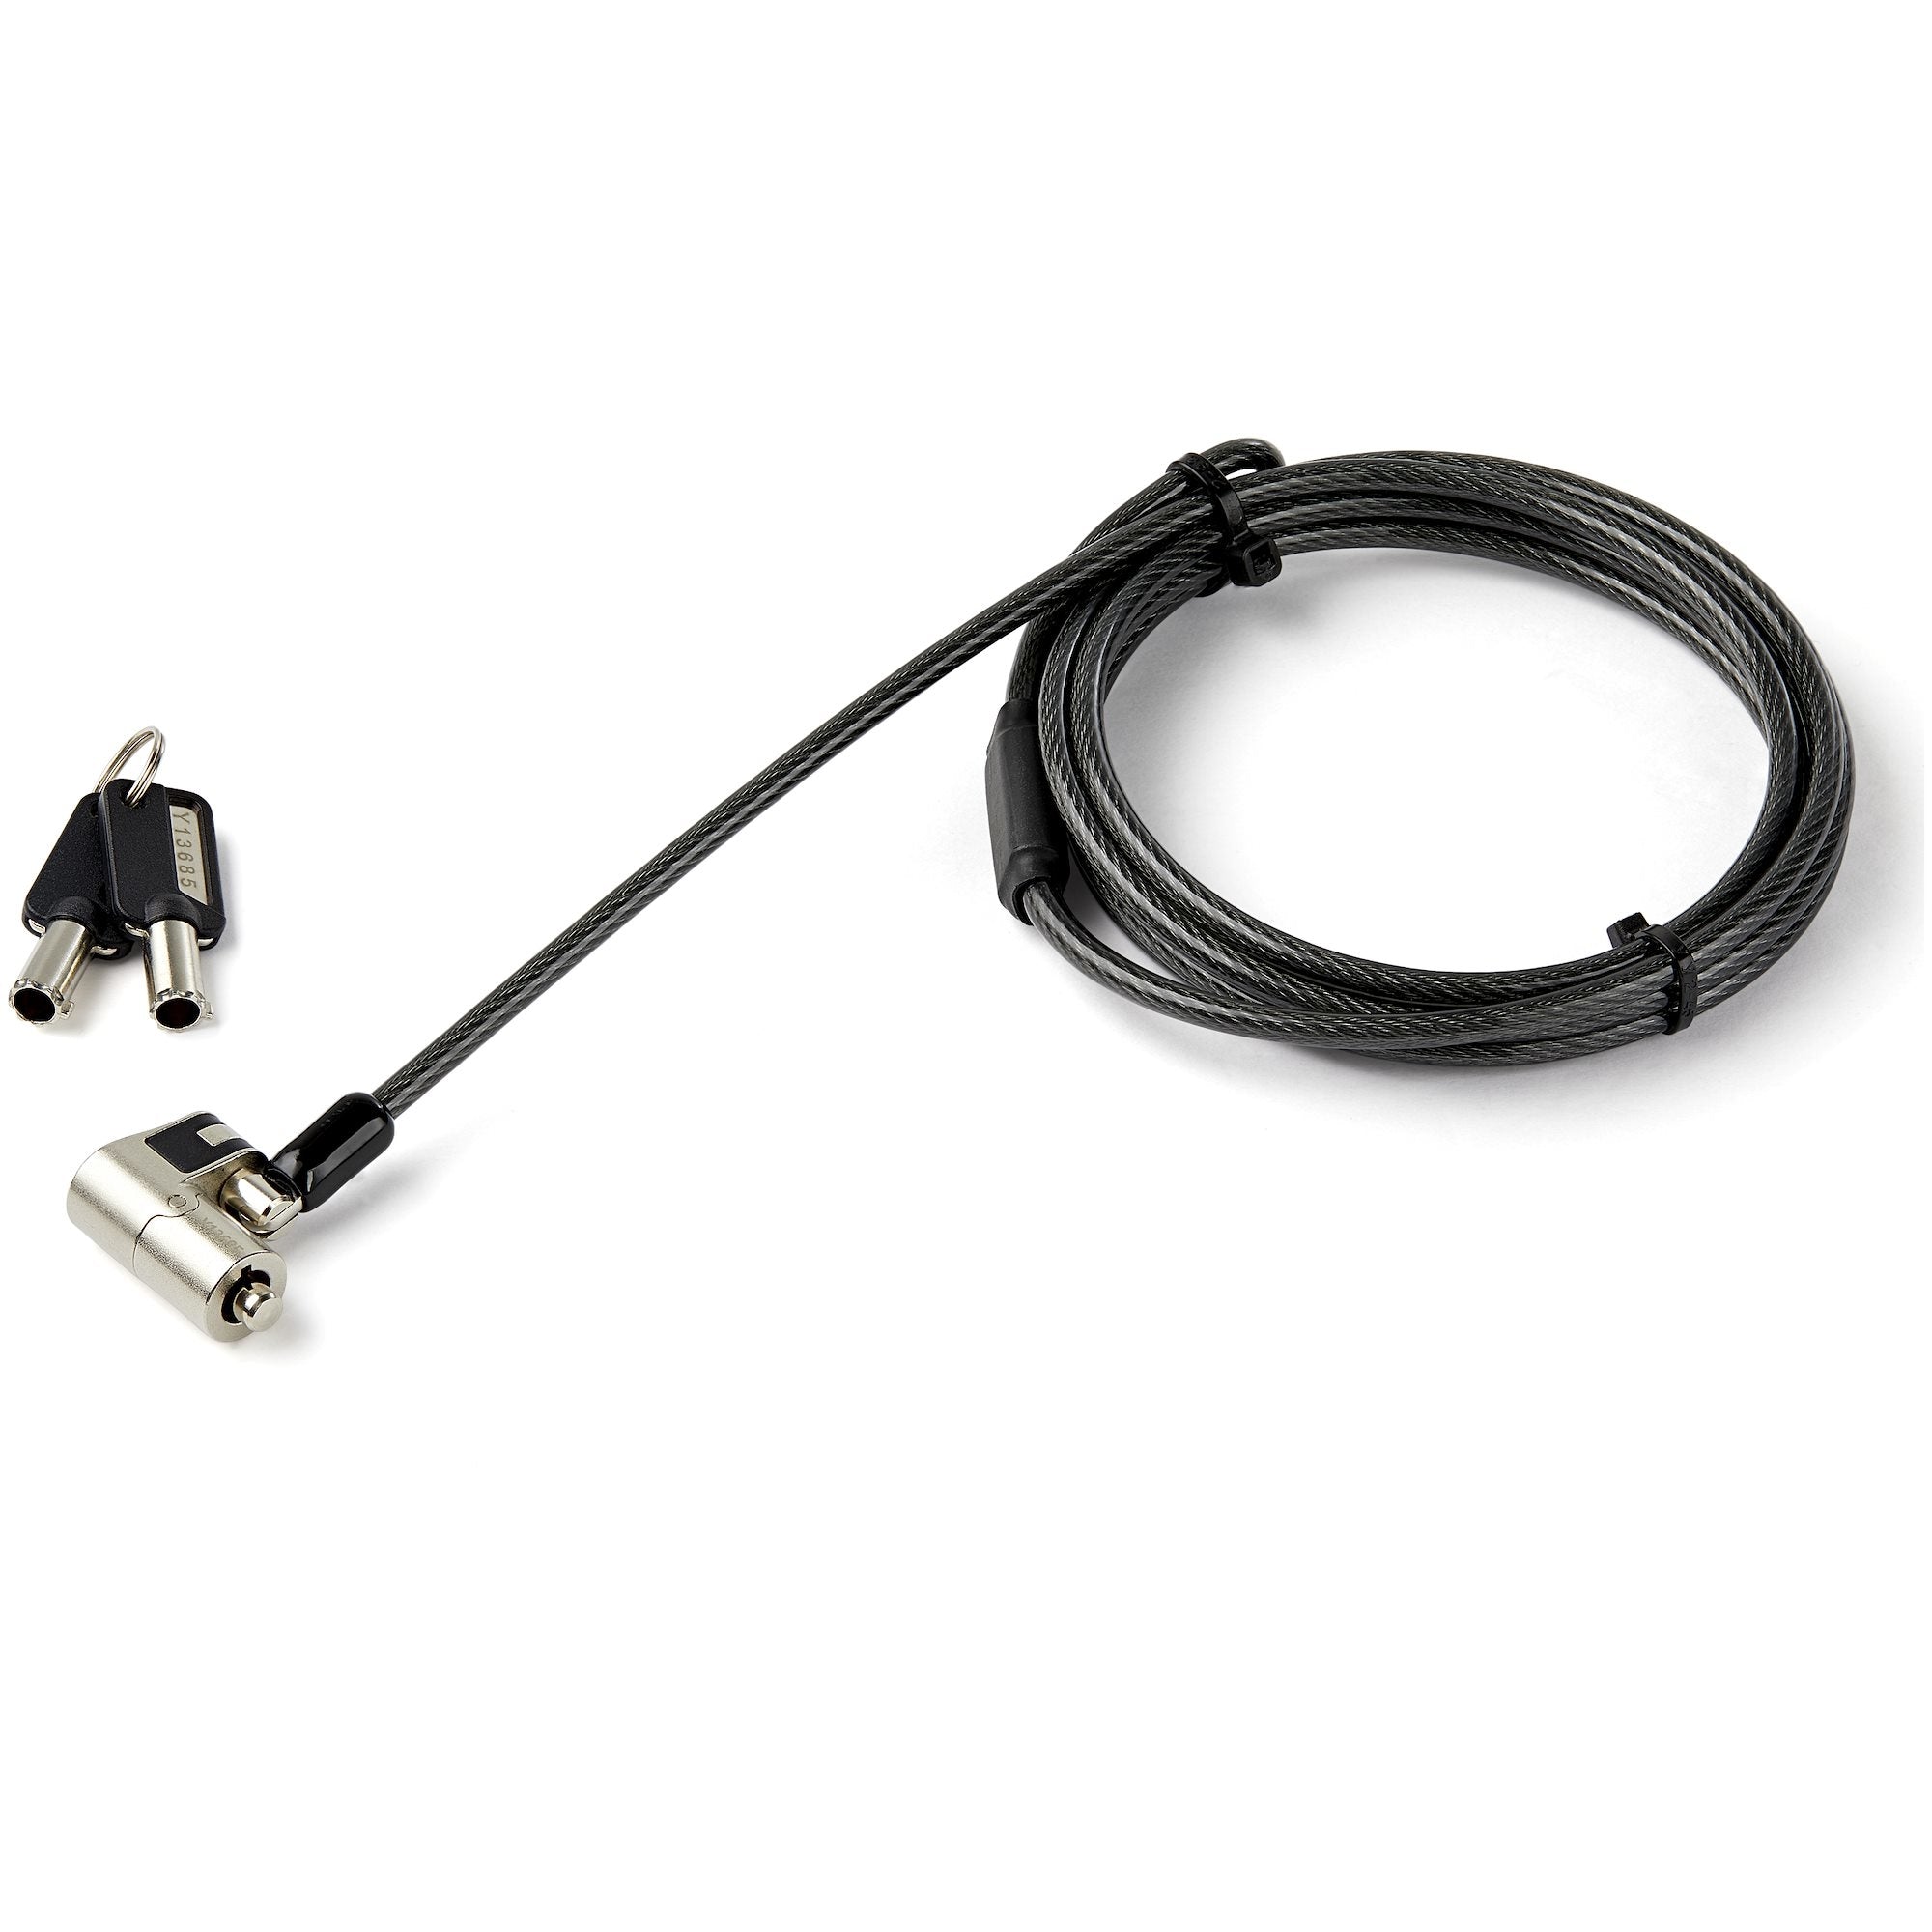 Cable De 2M Universal 3 En 1 Con Candado Para Laptop Con Ranura K-Slot, Nano O Wedge - Cable Antirrobo En Acero Con Llave - Startech.Com Mod. Ltulockkey